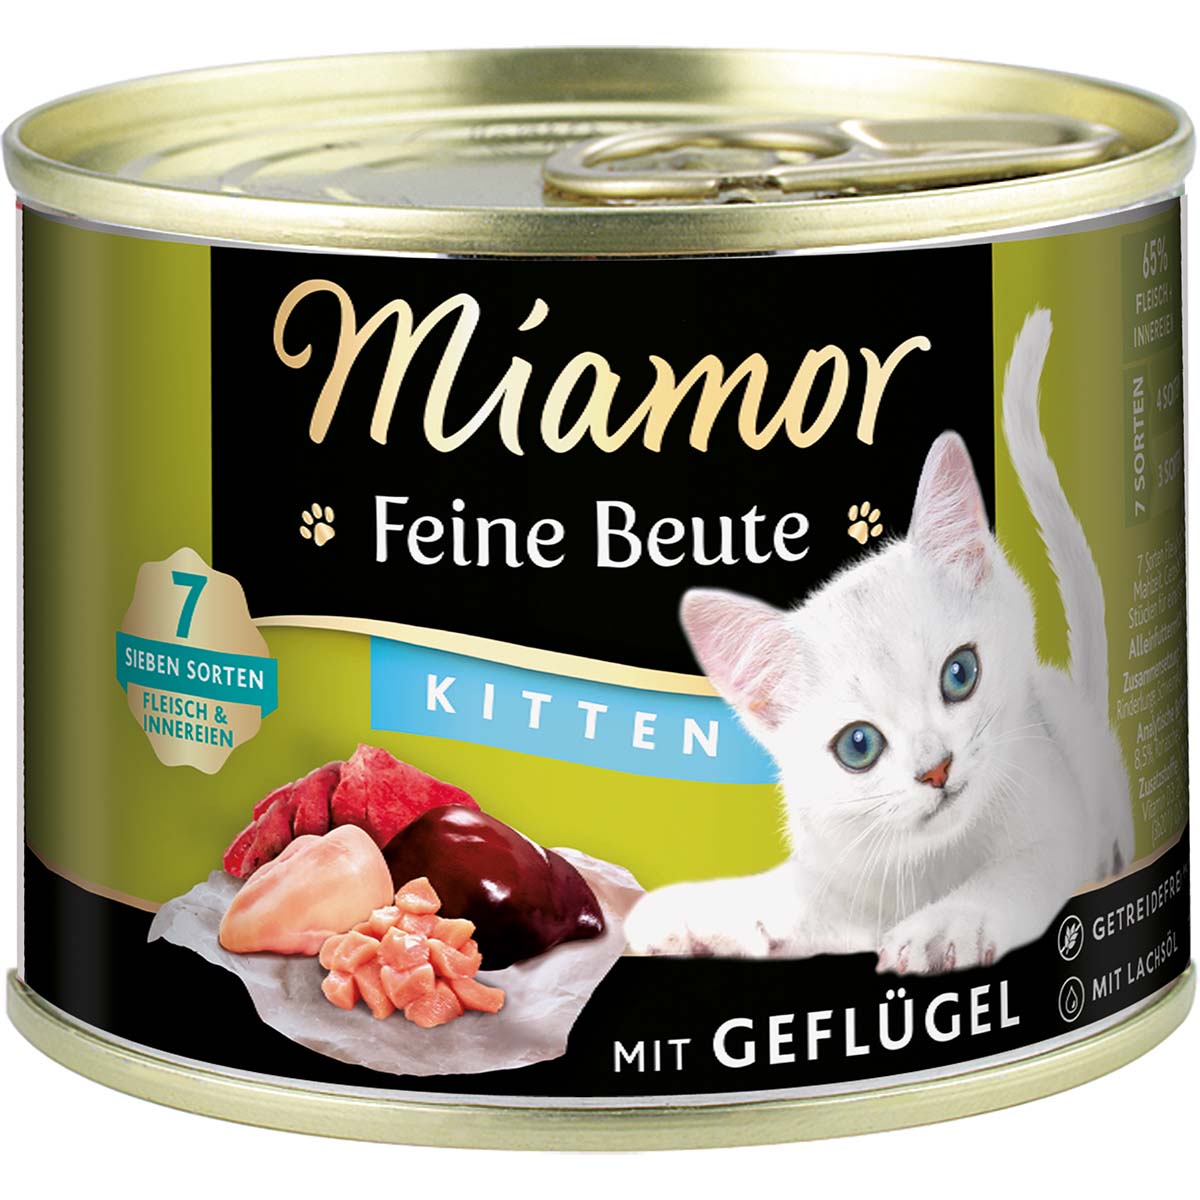 Miamor Feine Beute Kitten - Geflügel 24x185g von Miamor